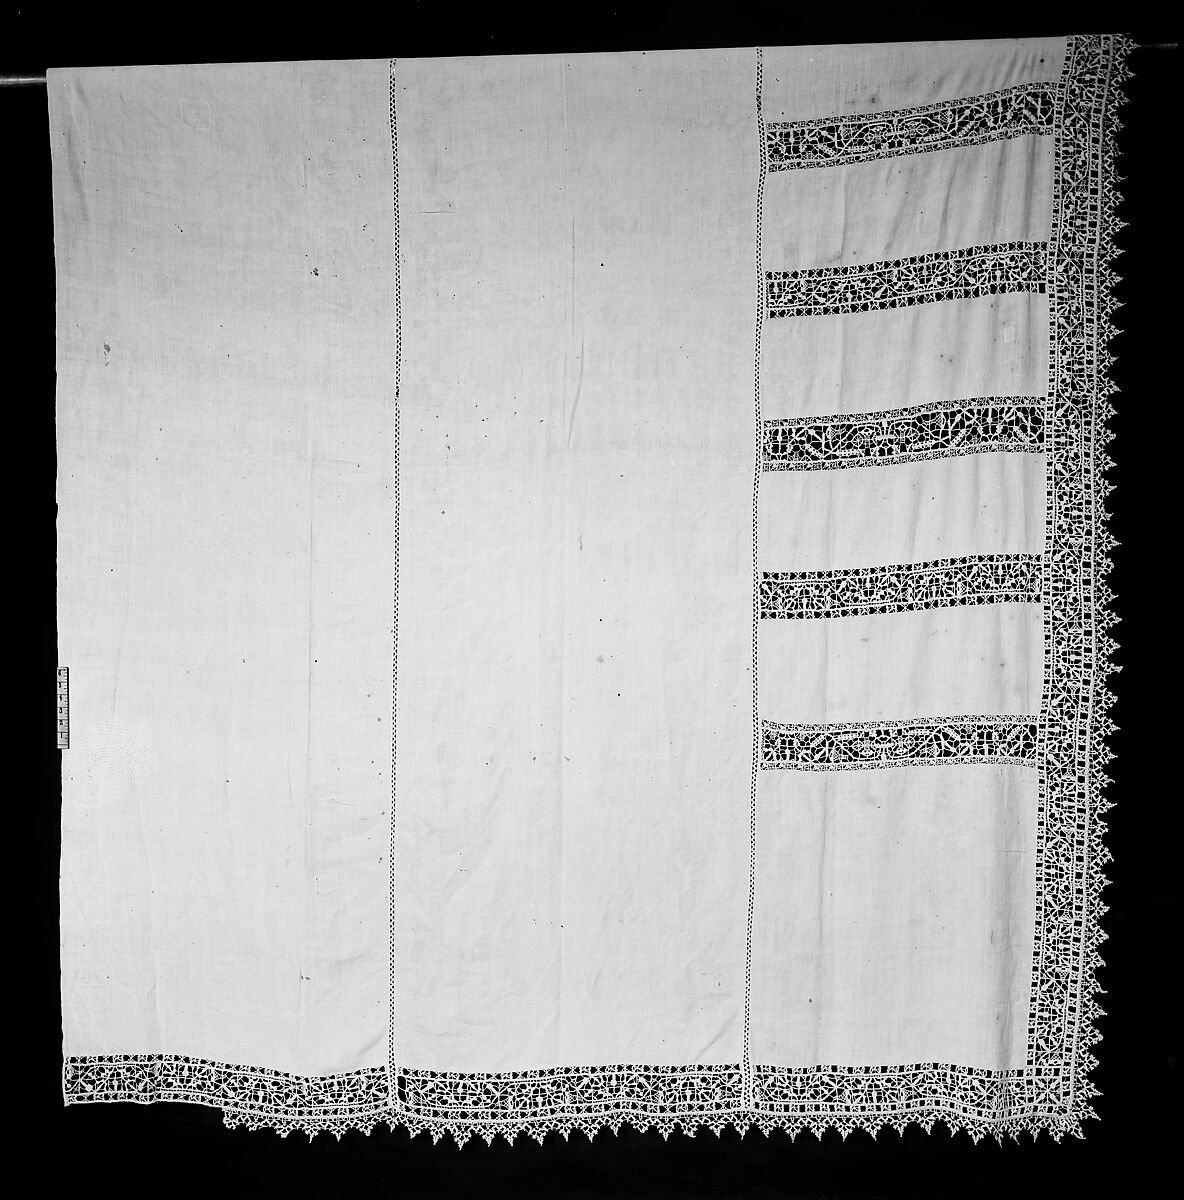 Altar cloth or hanging | Italian | The Metropolitan Museum of Art